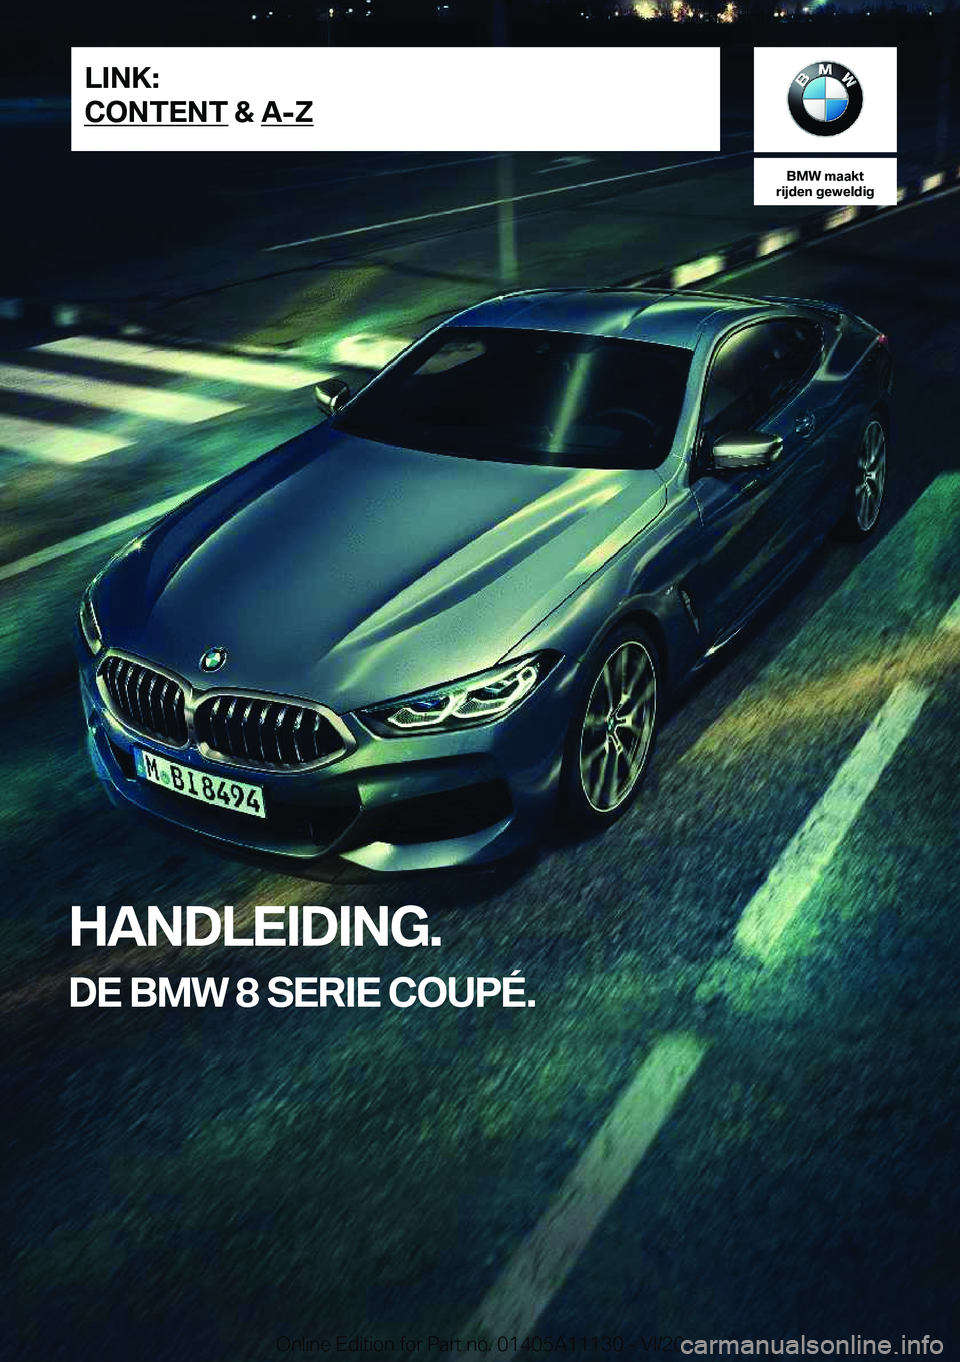 BMW 8 SERIES COUPE 2021  Instructieboekjes (in Dutch) �B�M�W��m�a�a�k�t
�r�i�j�d�e�n��g�e�w�e�l�d�i�g
�H�A�N�D�L�E�I�D�I�N�G�.
�D�E��B�M�W��8��S�E�R�I�E��C�O�U�P�